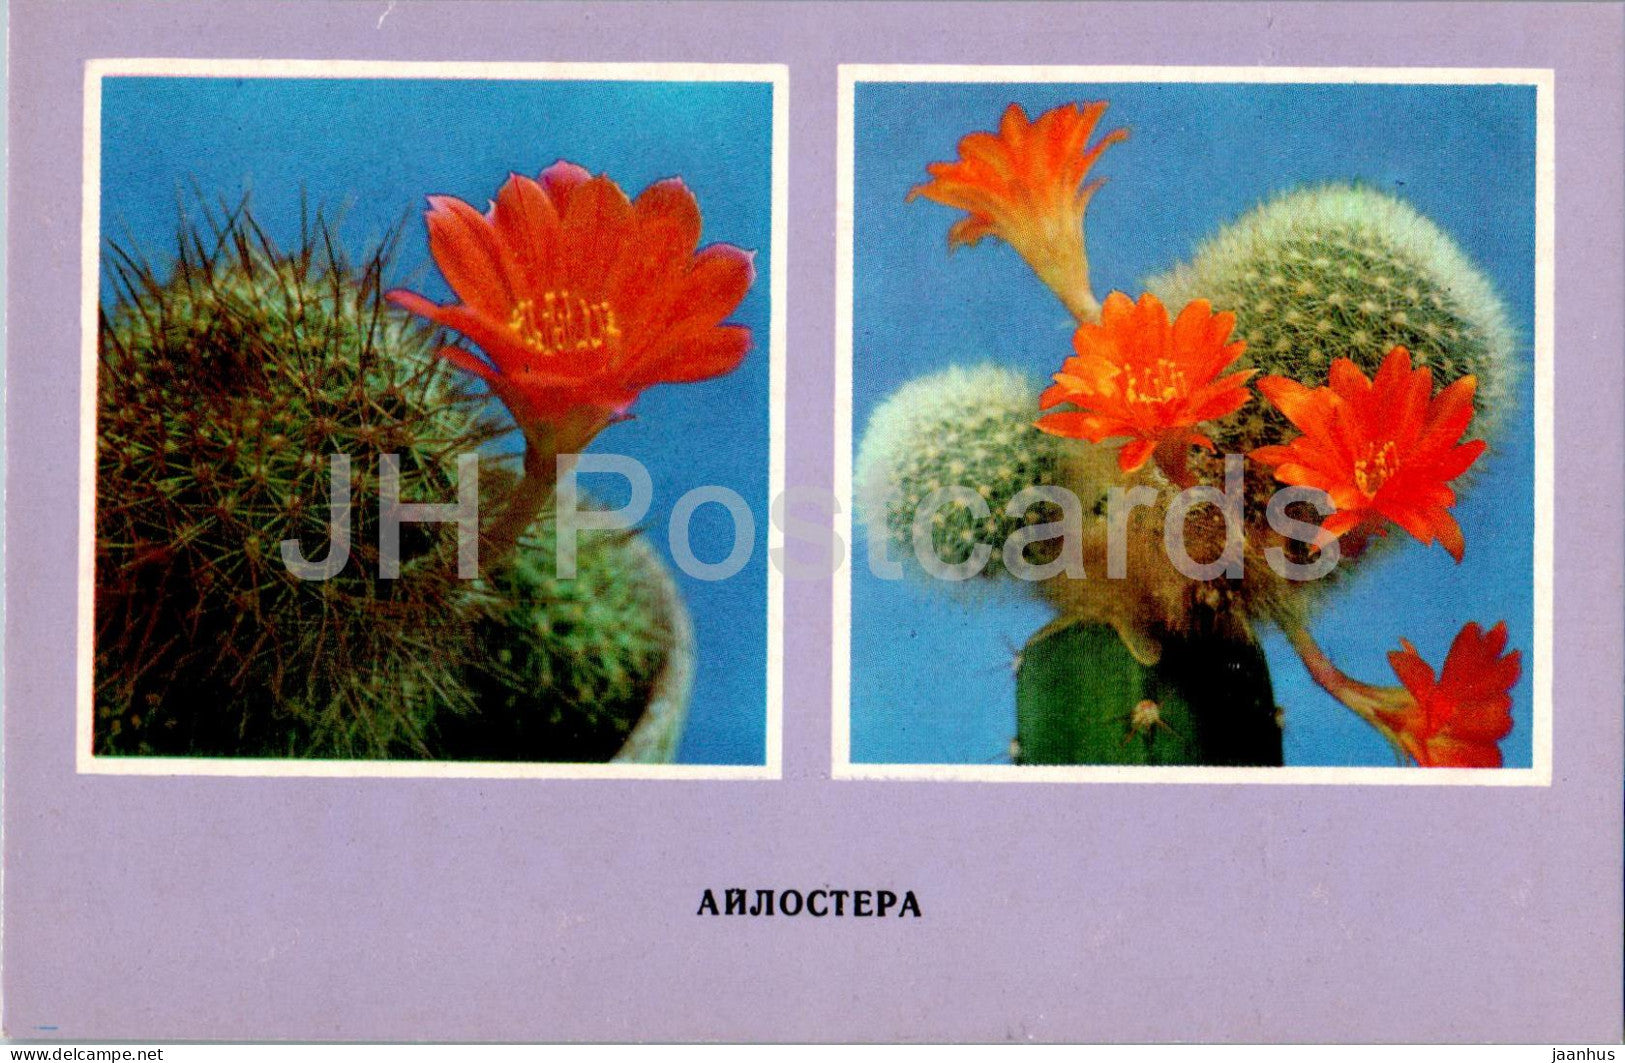 Aylostera - cacti - cactus - flowers - 1977 - Ukraine USSR - unused - JH Postcards